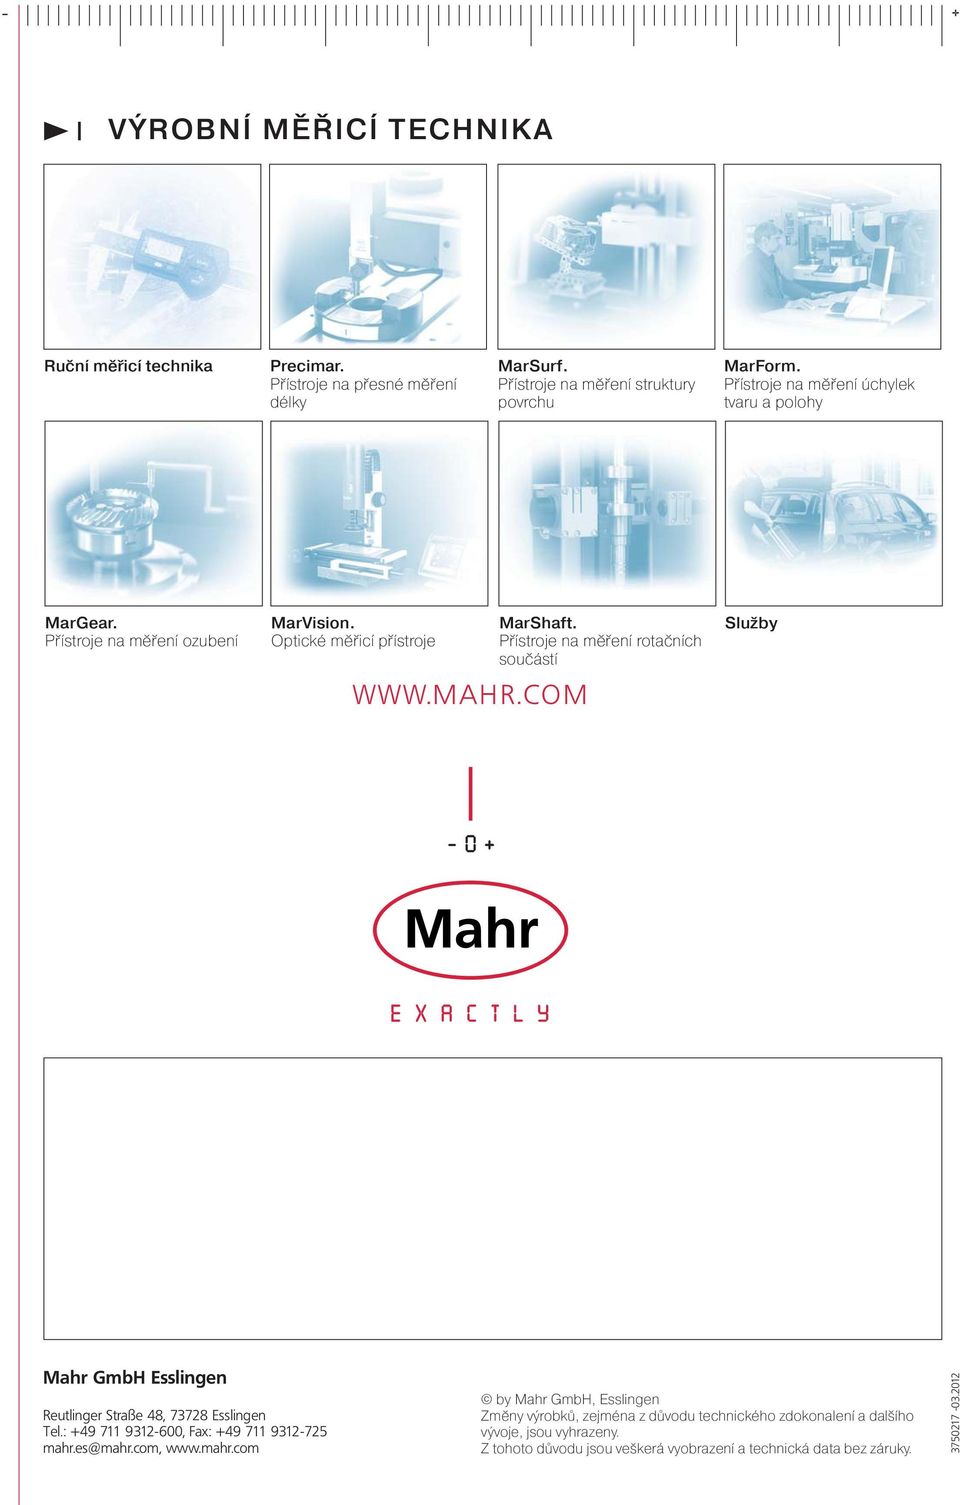 Přístroje na měření rotačních součástí Služby Mahr GmbH Esslingen Reutlinger Straße 48, 73728 Esslingen Tel.: +49 711 9312-600, Fax: +49 711 9312-725 mahr.es@mahr.